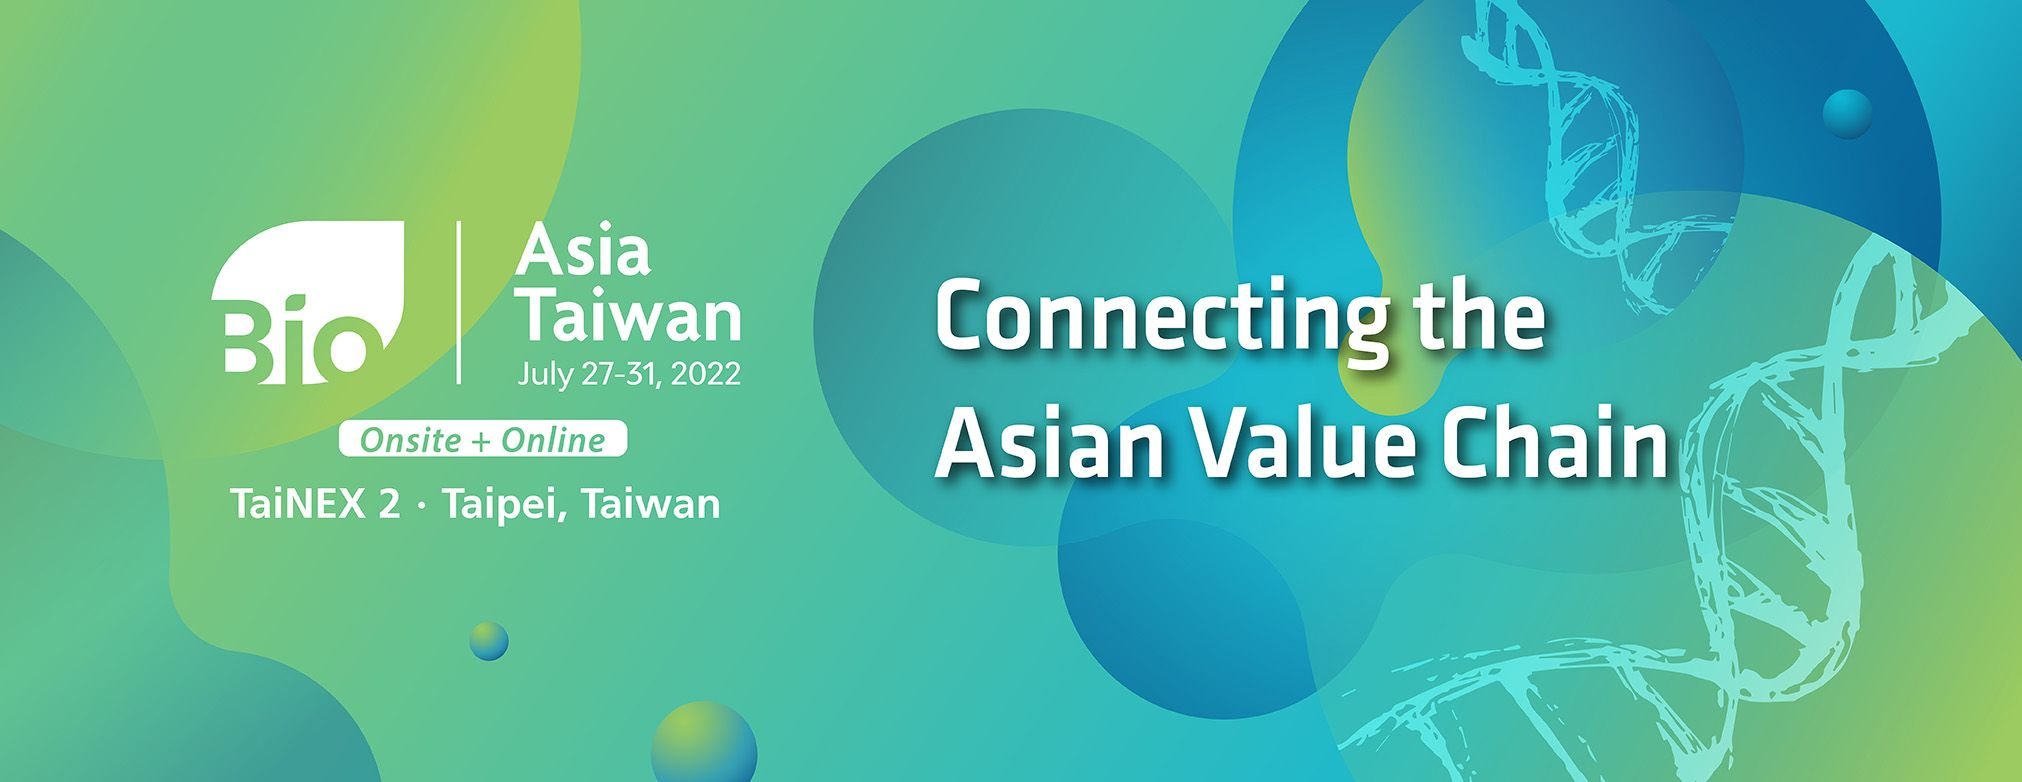 2022 BioAsia Đài Loan